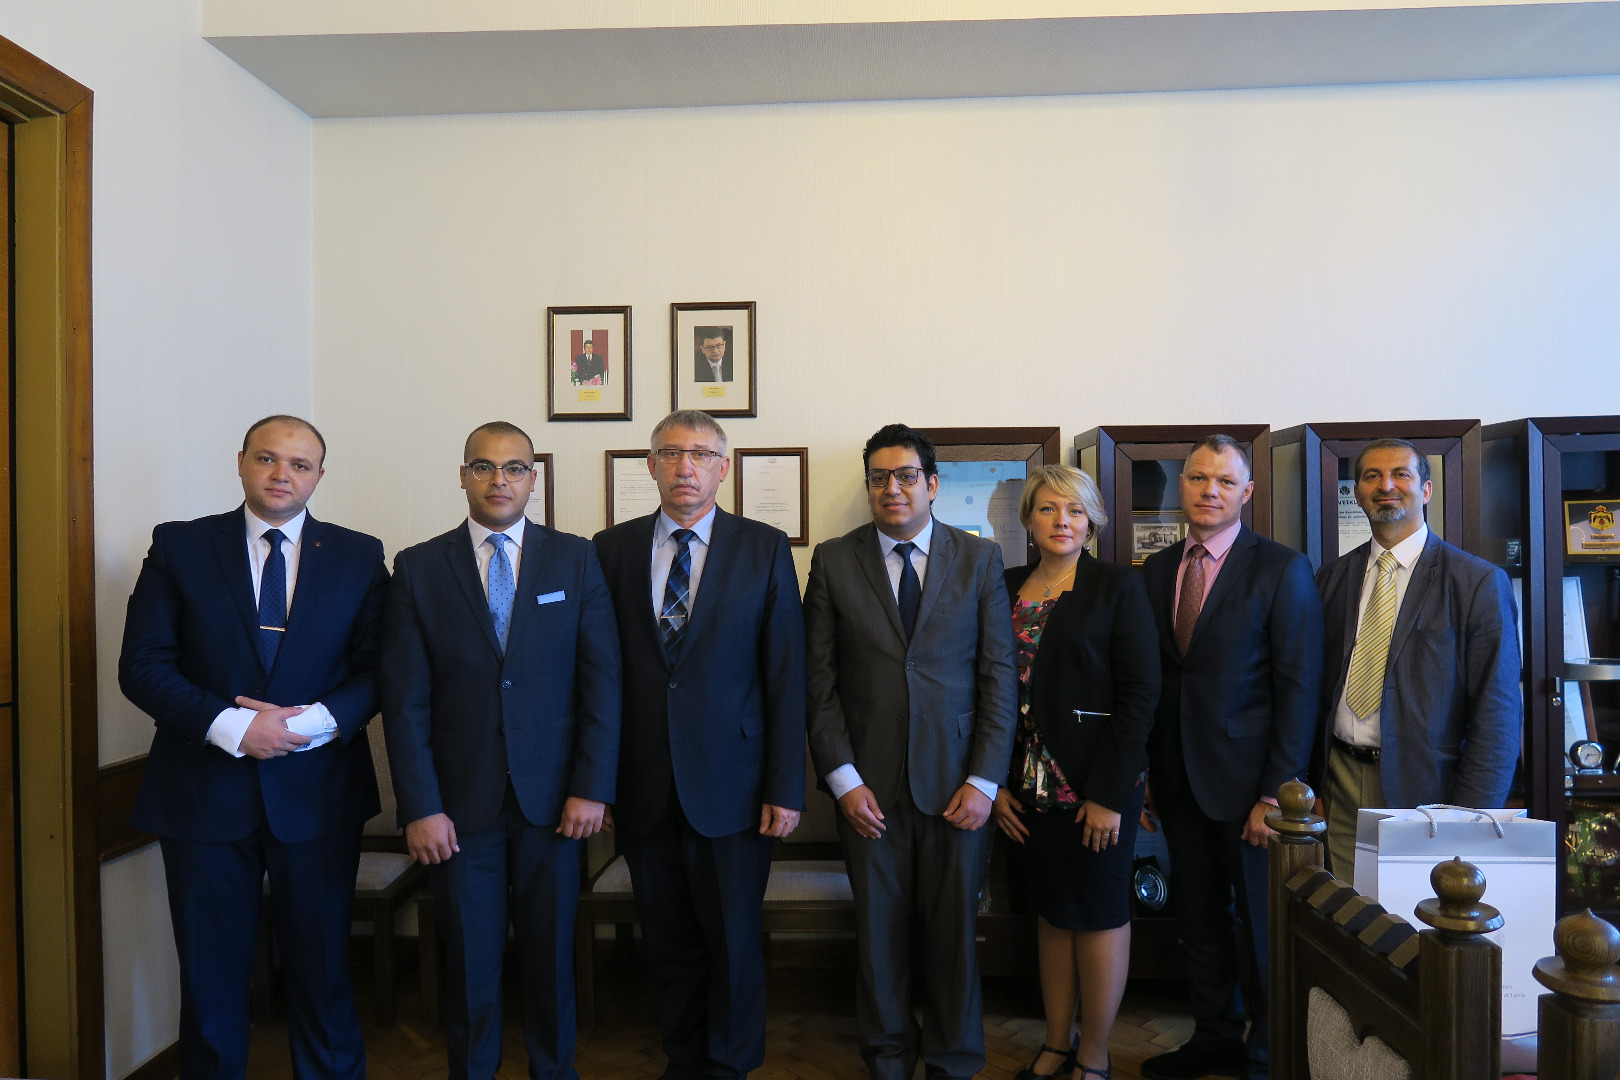 Ģenerālprokurora Ērika Kalnmeiera un Ģenerālprokuratūras pārstāvju tikšanās ar Ēģiptes Ģenerālprokuratūras pārstāvju delegāciju 2017.gada 10.jūlijā